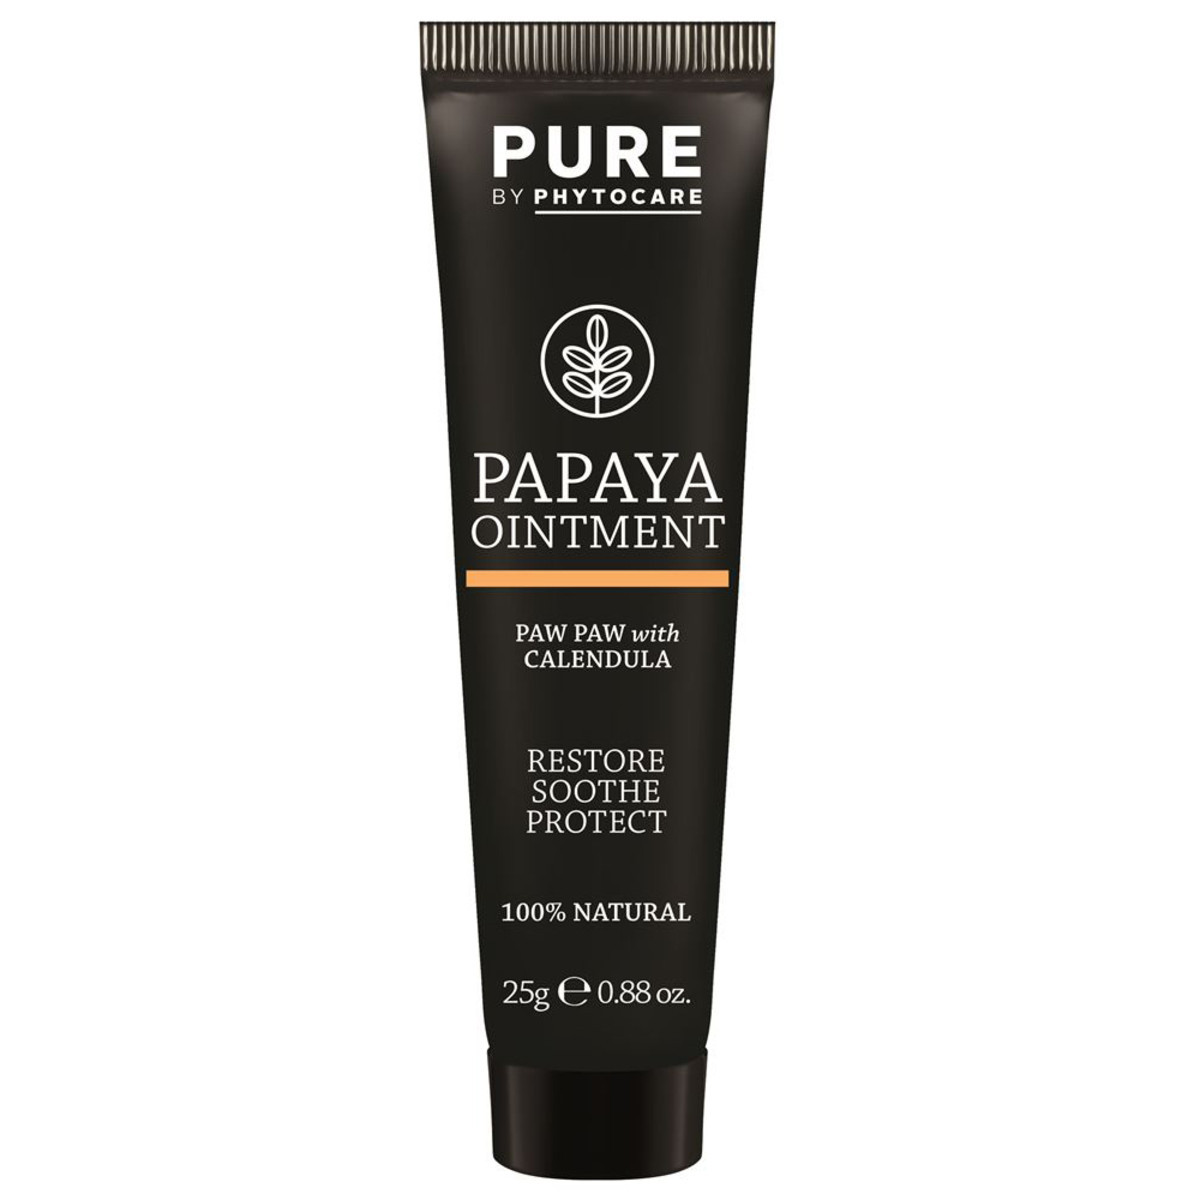 Papaya (Paw Paw) Ointment Calendula Phytocare Petro Free (25g)